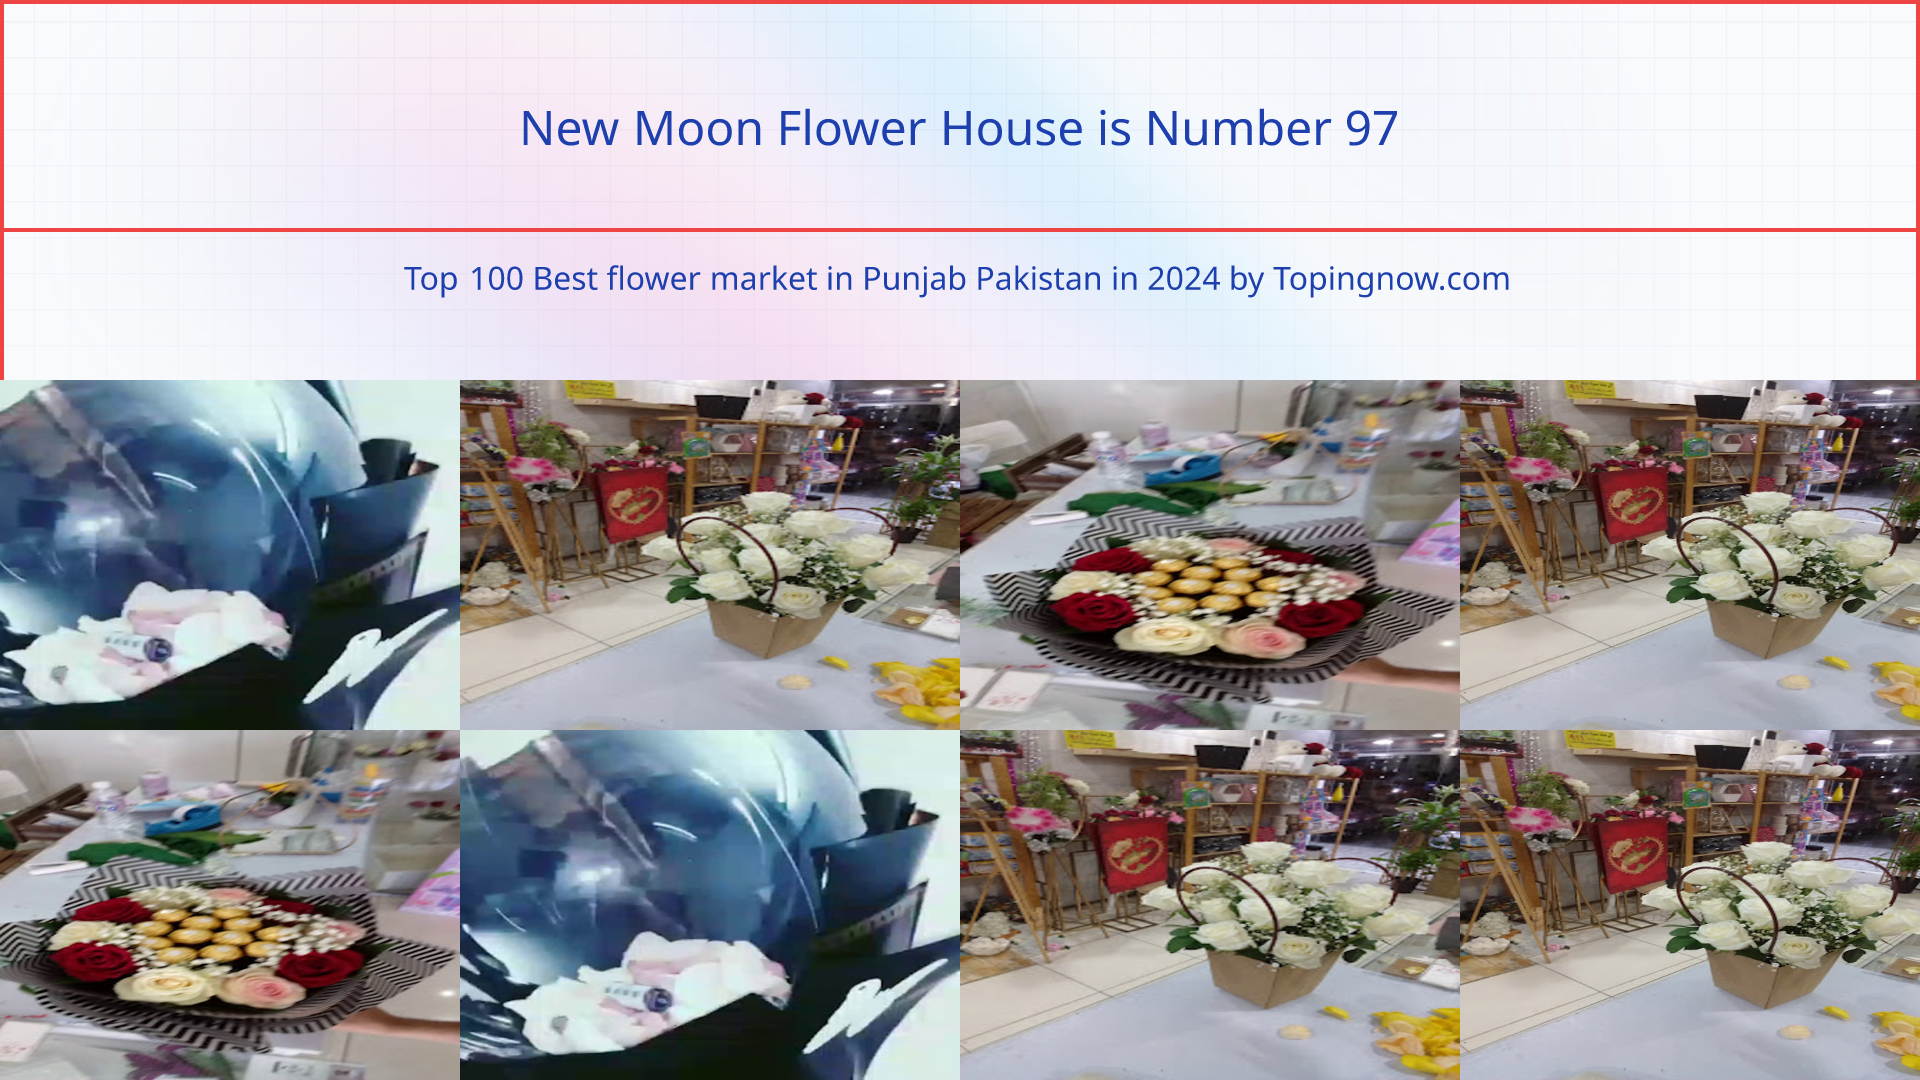 New Moon Flower House: Top 100 Best flower market in Punjab Pakistan in 2024